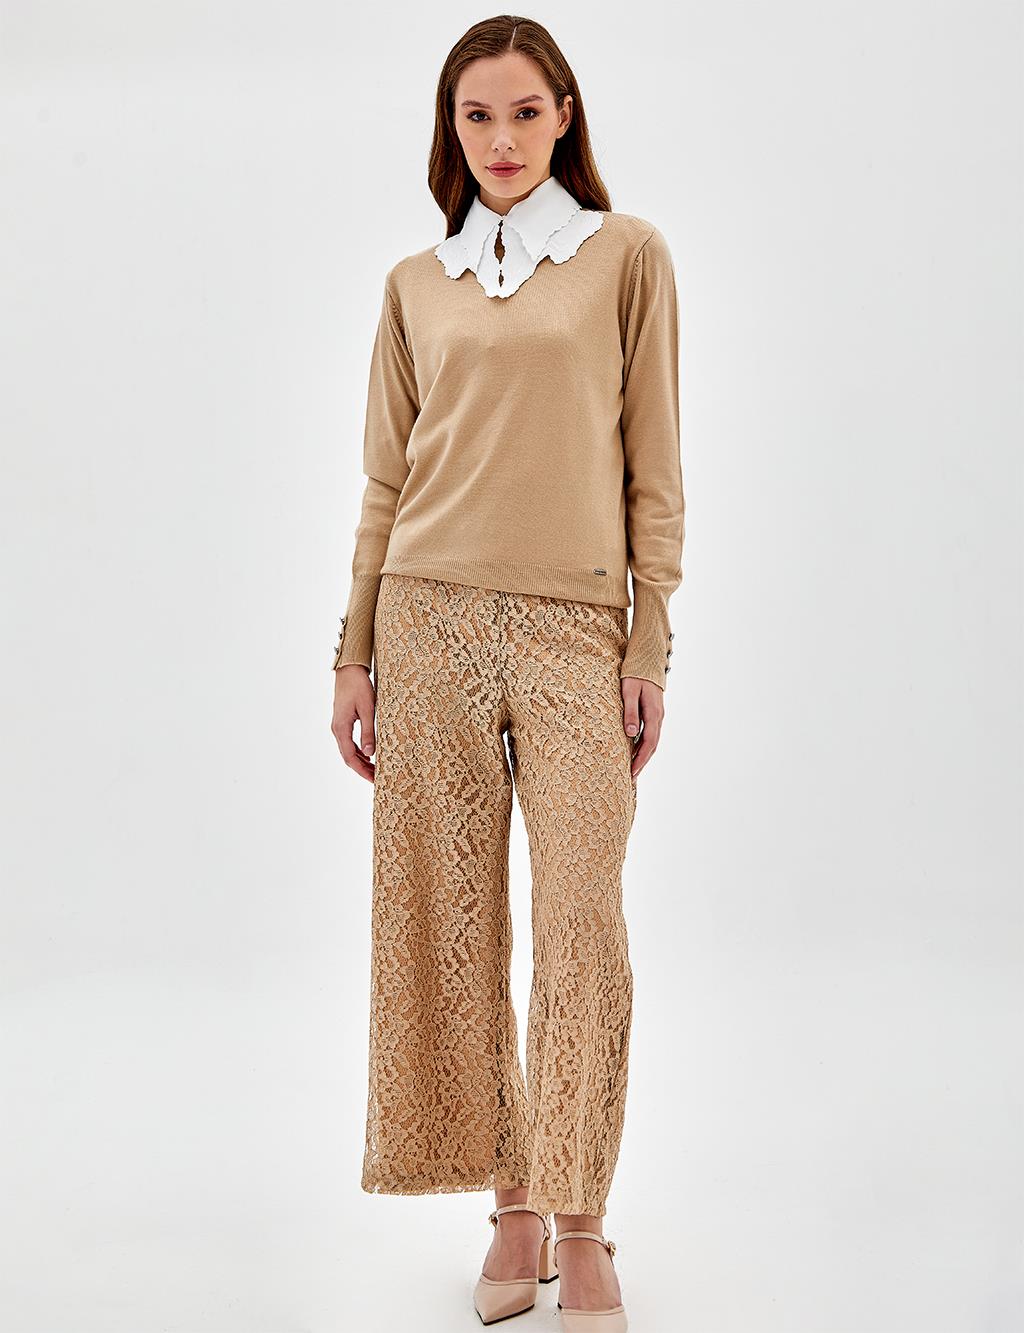 Кружевные многослойные брюки с высокой талией Песочно-бежевого цвета Kayra комплект рубашка и шорты comfortlee sand beige l мл